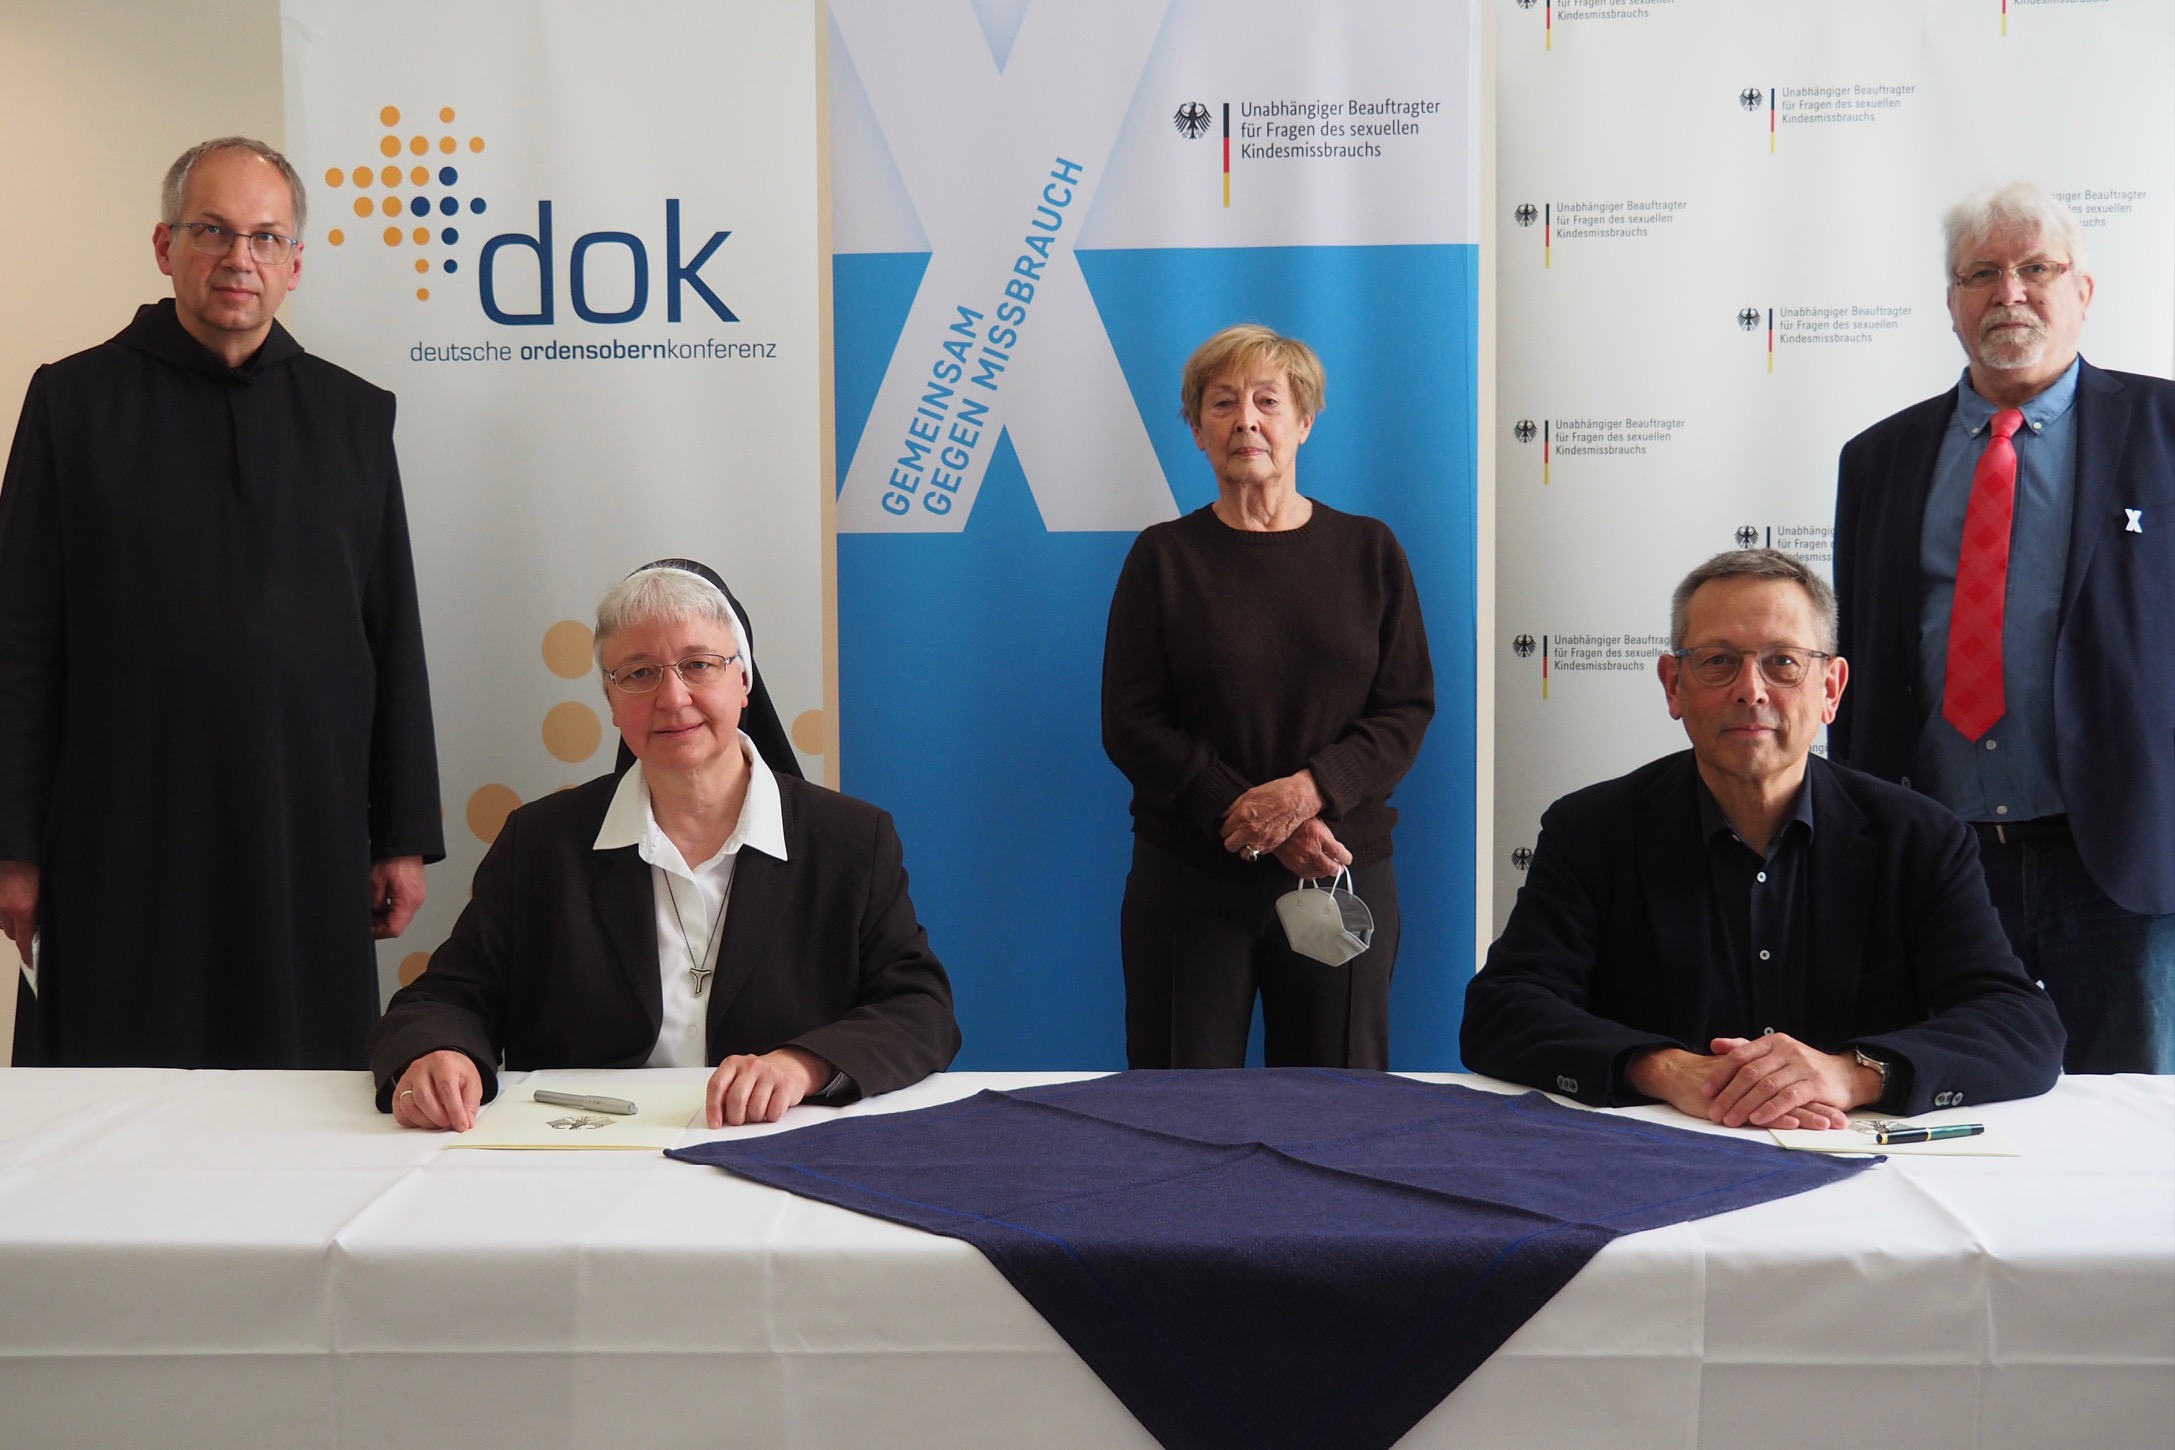 Deutsche Ordensobernkonferenz und UBSKM unterzeichnen „Gemeinsame Erklärung“ über verbindliche Kriterien und Standards für eine unabhängige Aufarbeitung